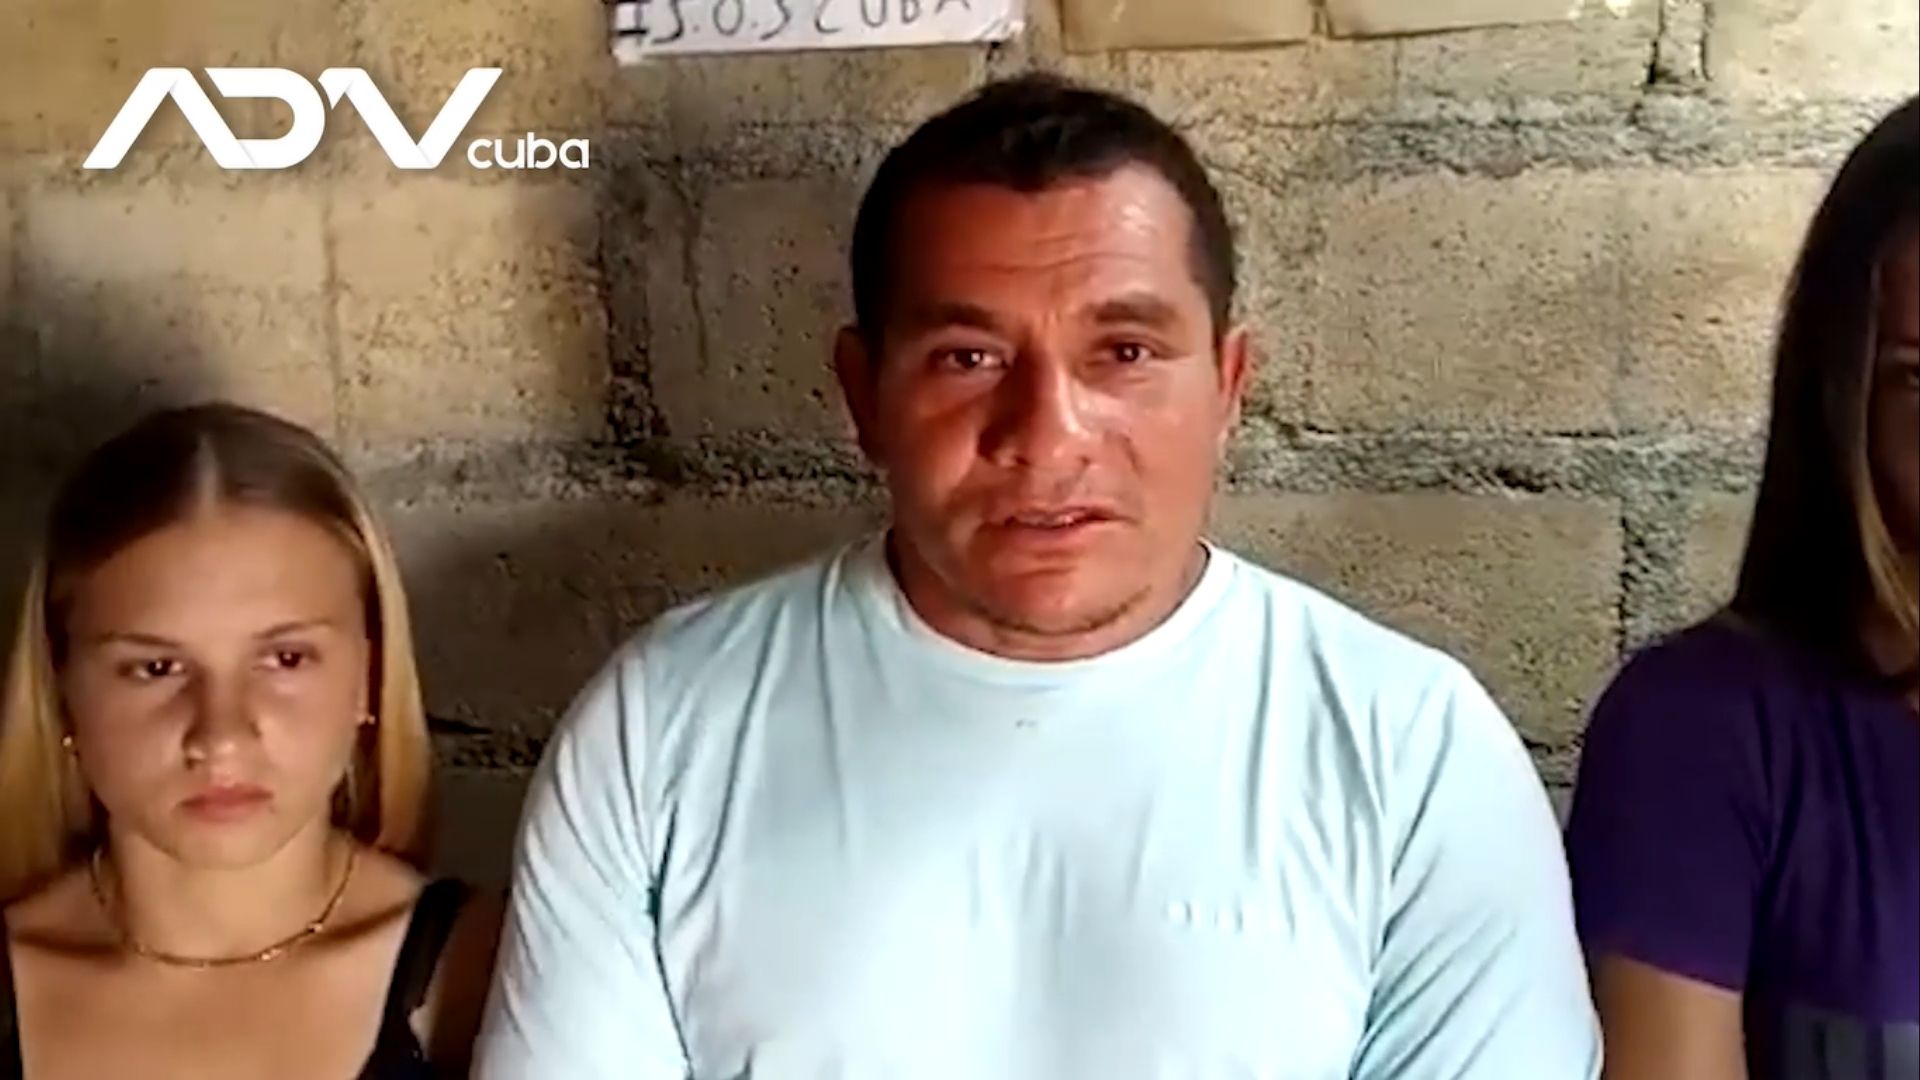 Matos Gaínza, quien reside con sus hijas menores de edad en el municipio Maisí, contó a ADN Cuba que ellas no tienen actualmente acceso a la educación